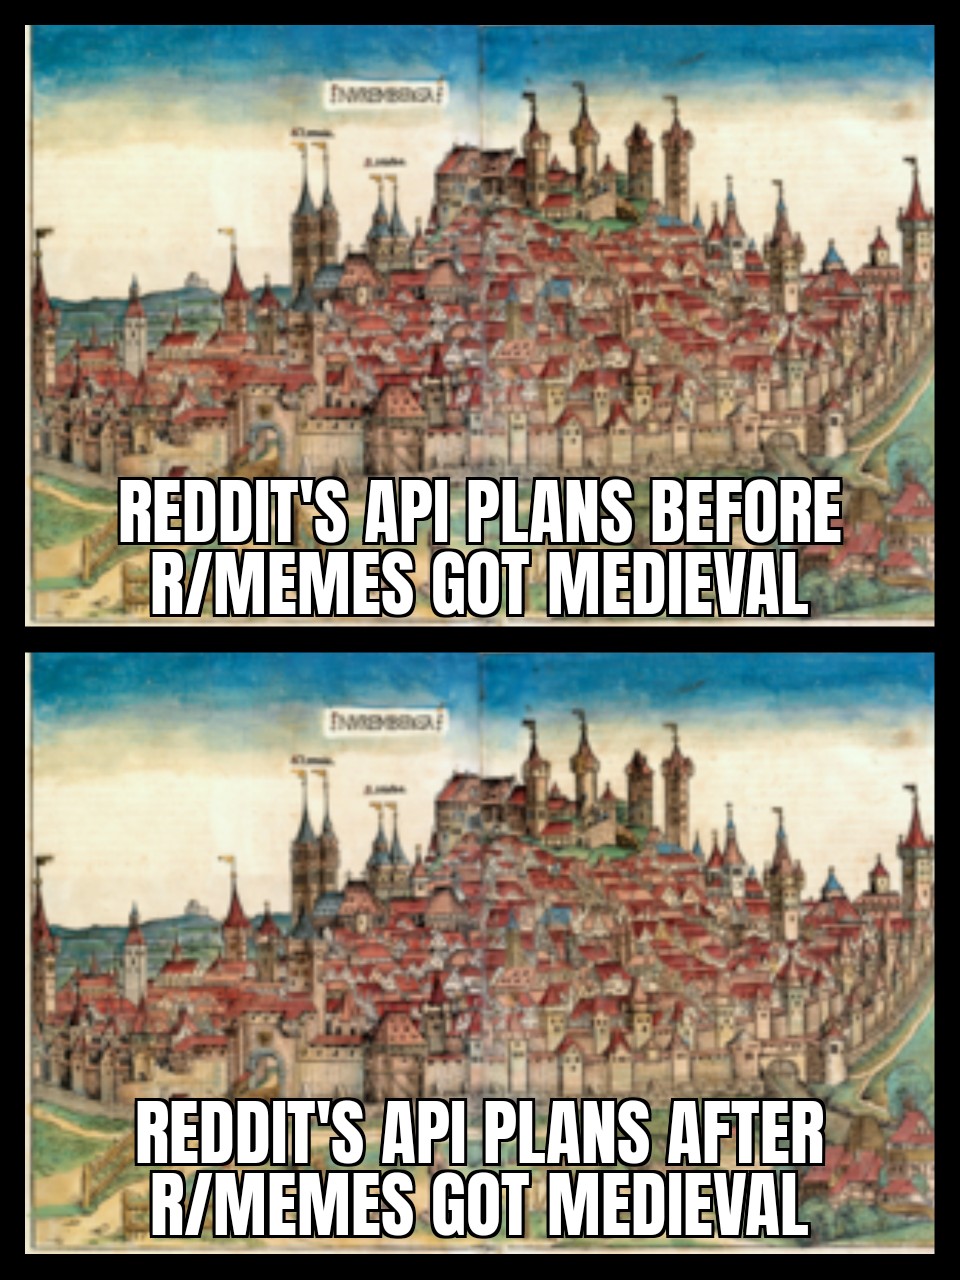 New plan! : r/memes